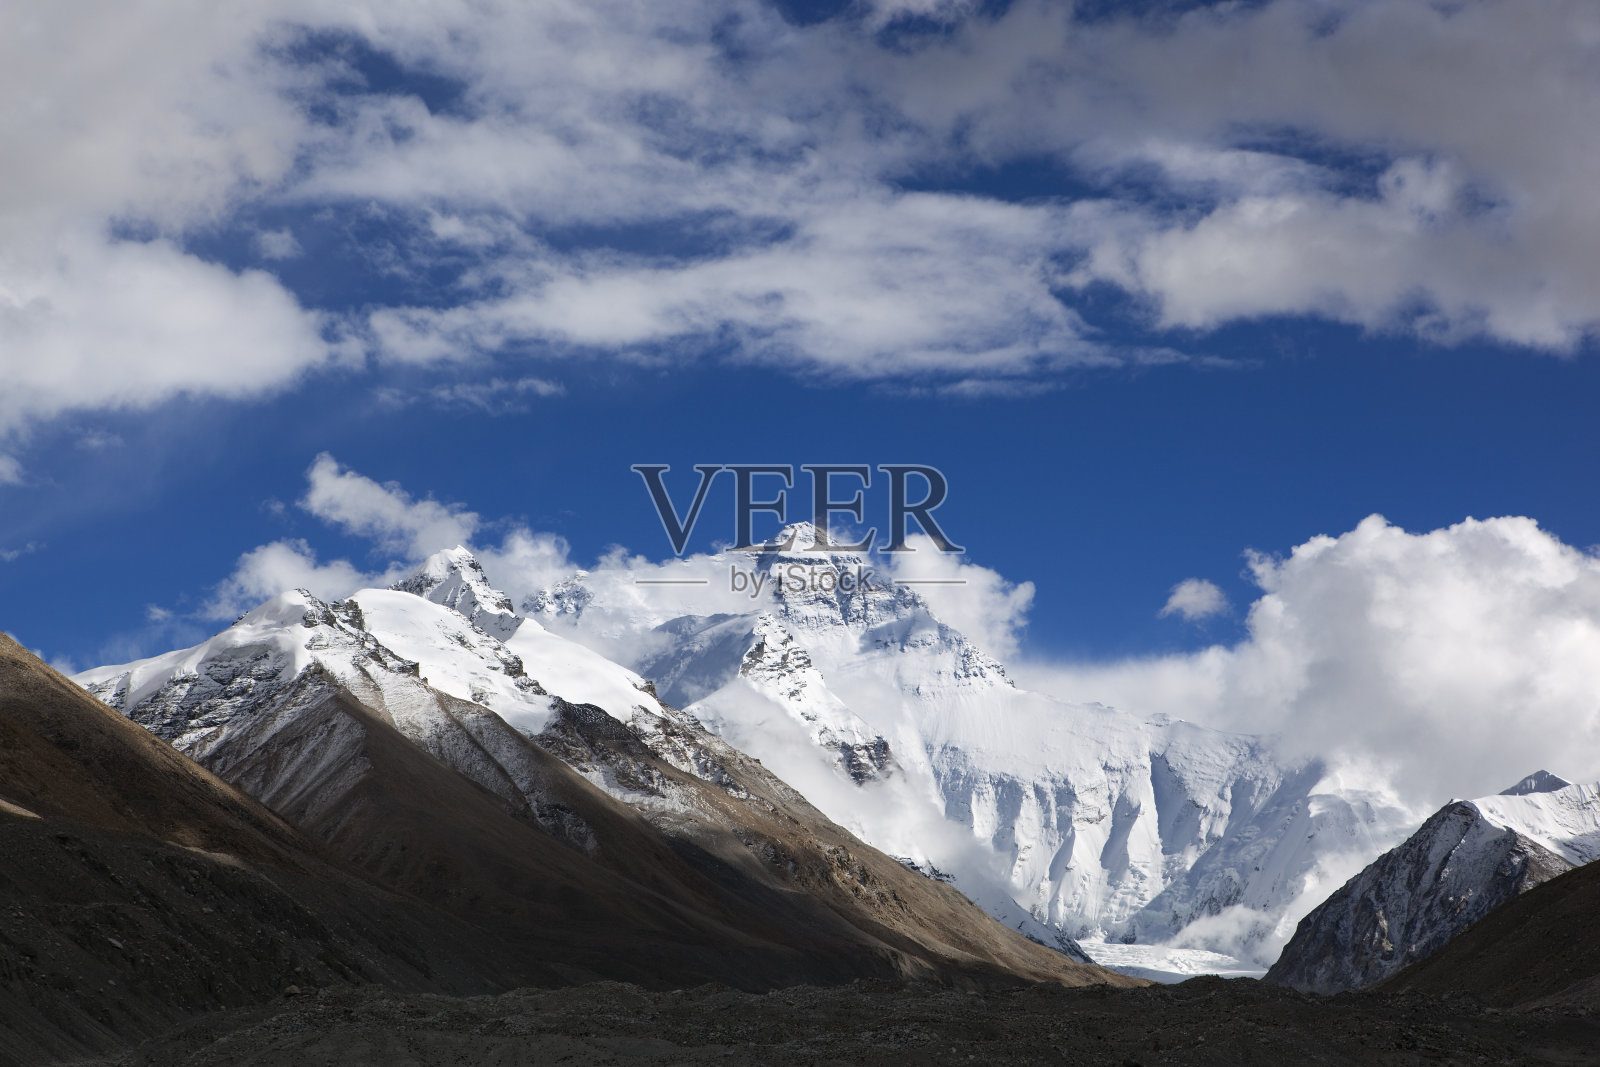 西藏:铜山珠穆朗玛峰照片摄影图片